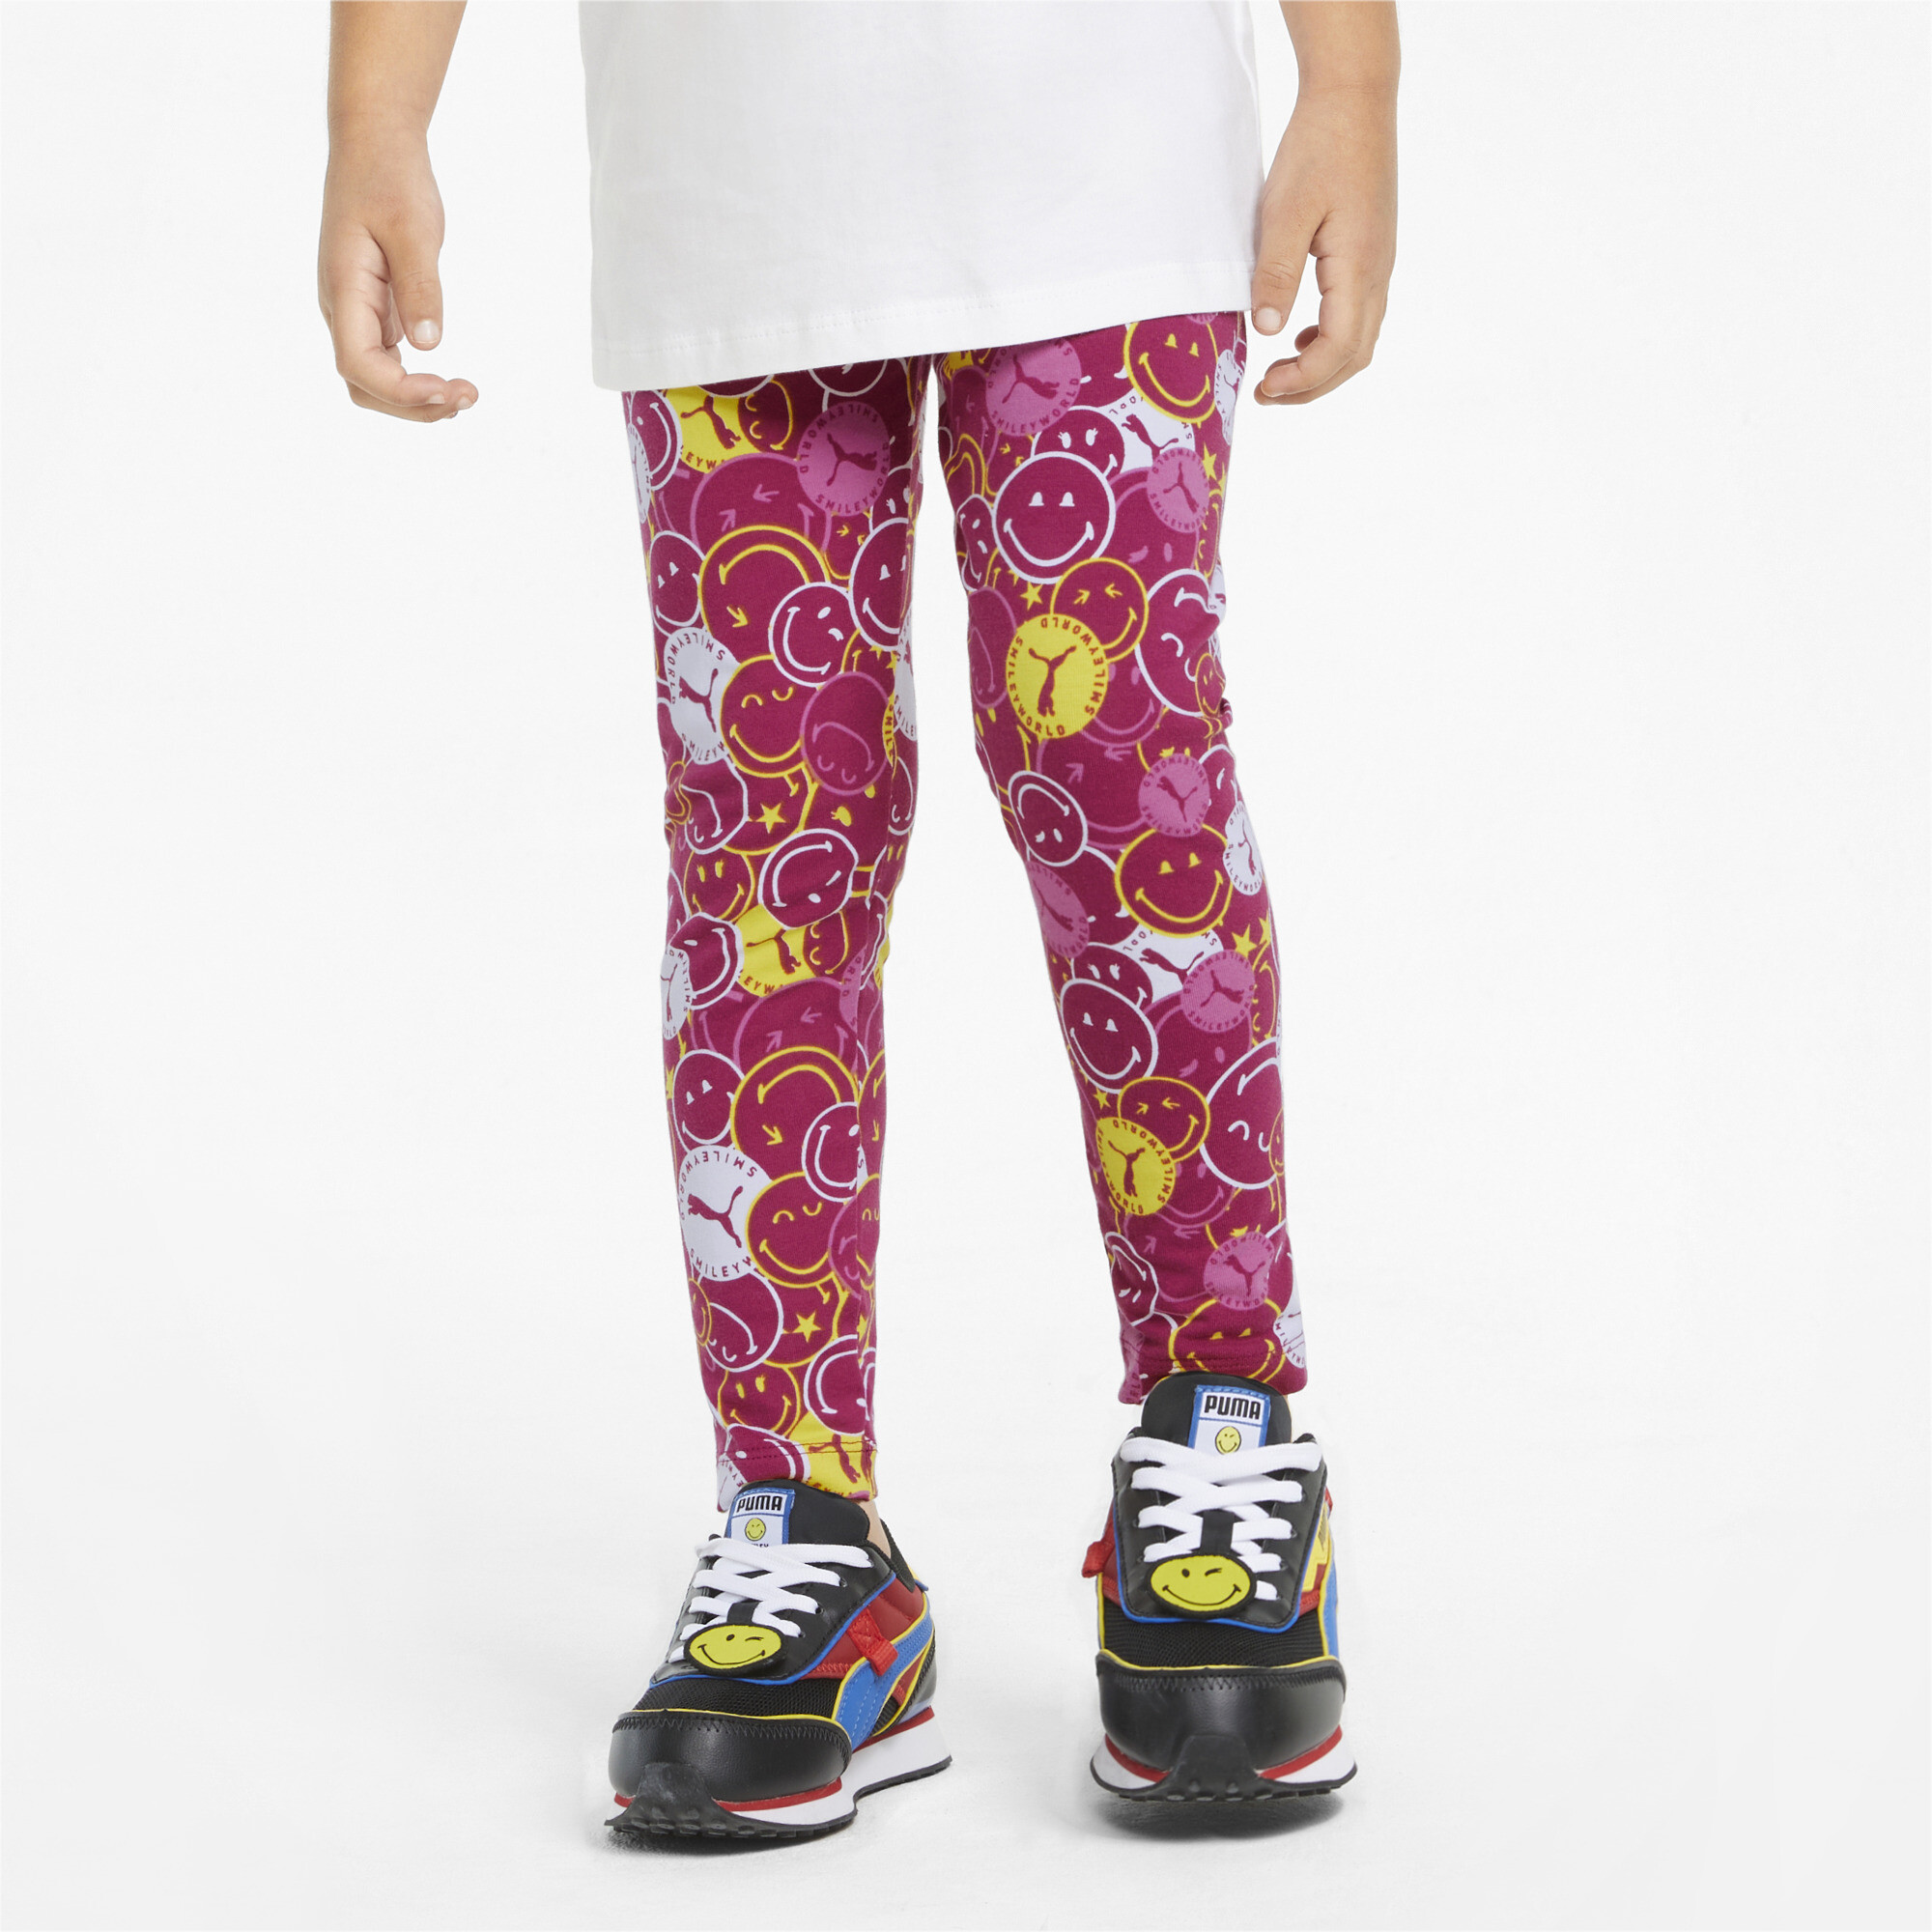 Emoji Leggings,Printed Leggings,Yoga Pants,Girls Xs4-5,S6-6X,M7-8,L10-12,XL14-16 